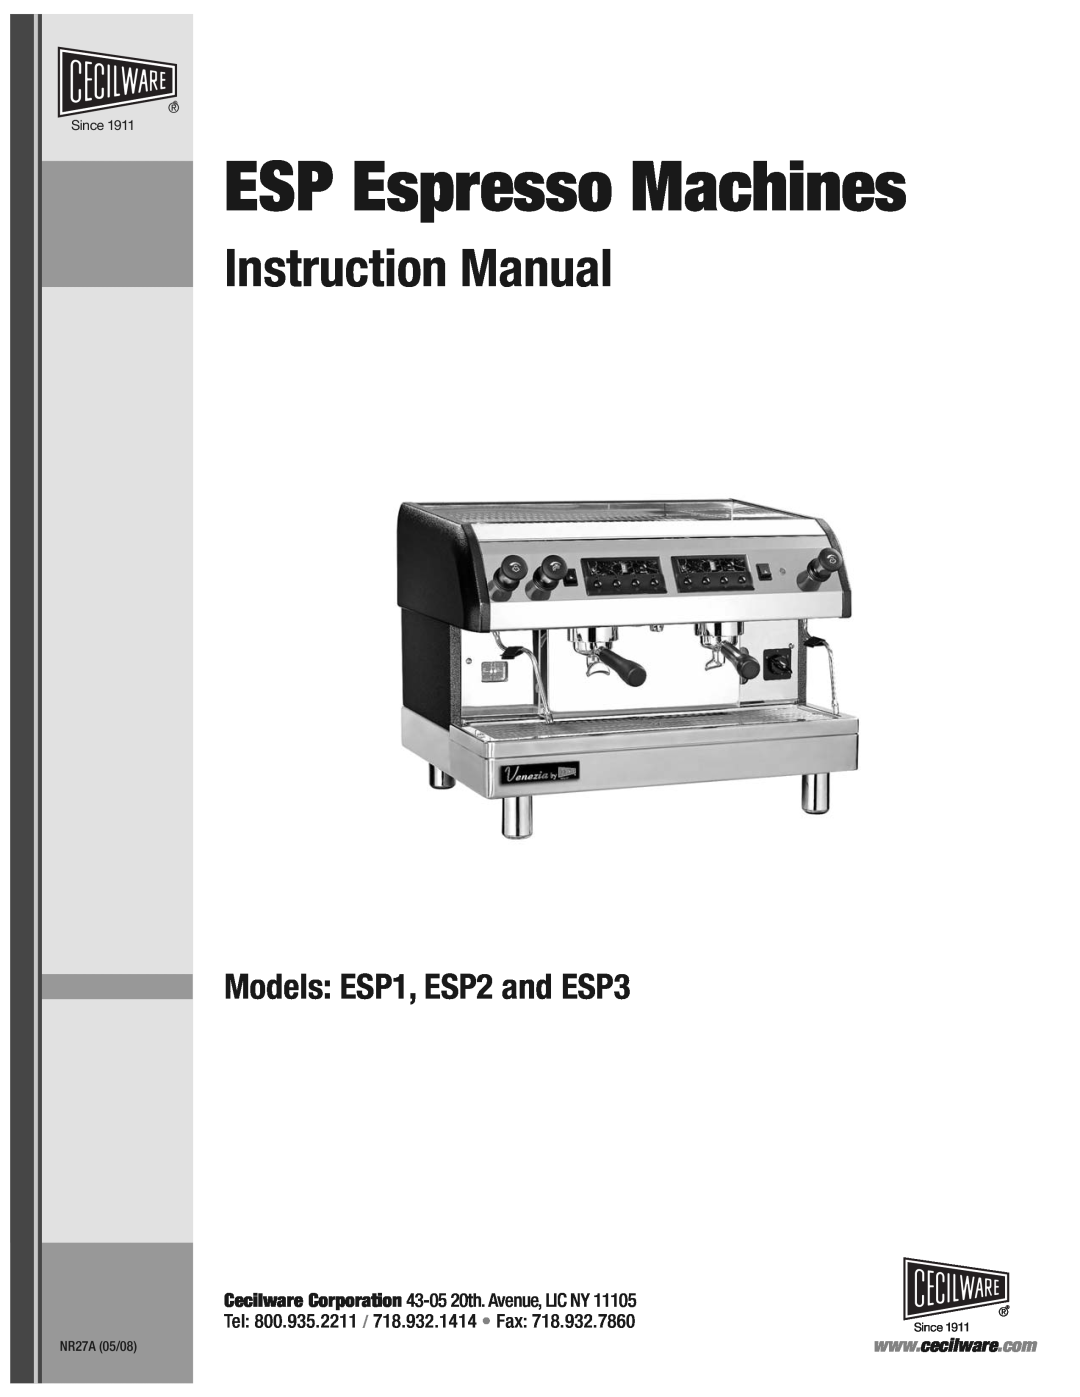 Cecilware instruction manual ESP Espresso Machines, Models ESP1, ESP2 and ESP3, NR27A 05/08, Since 